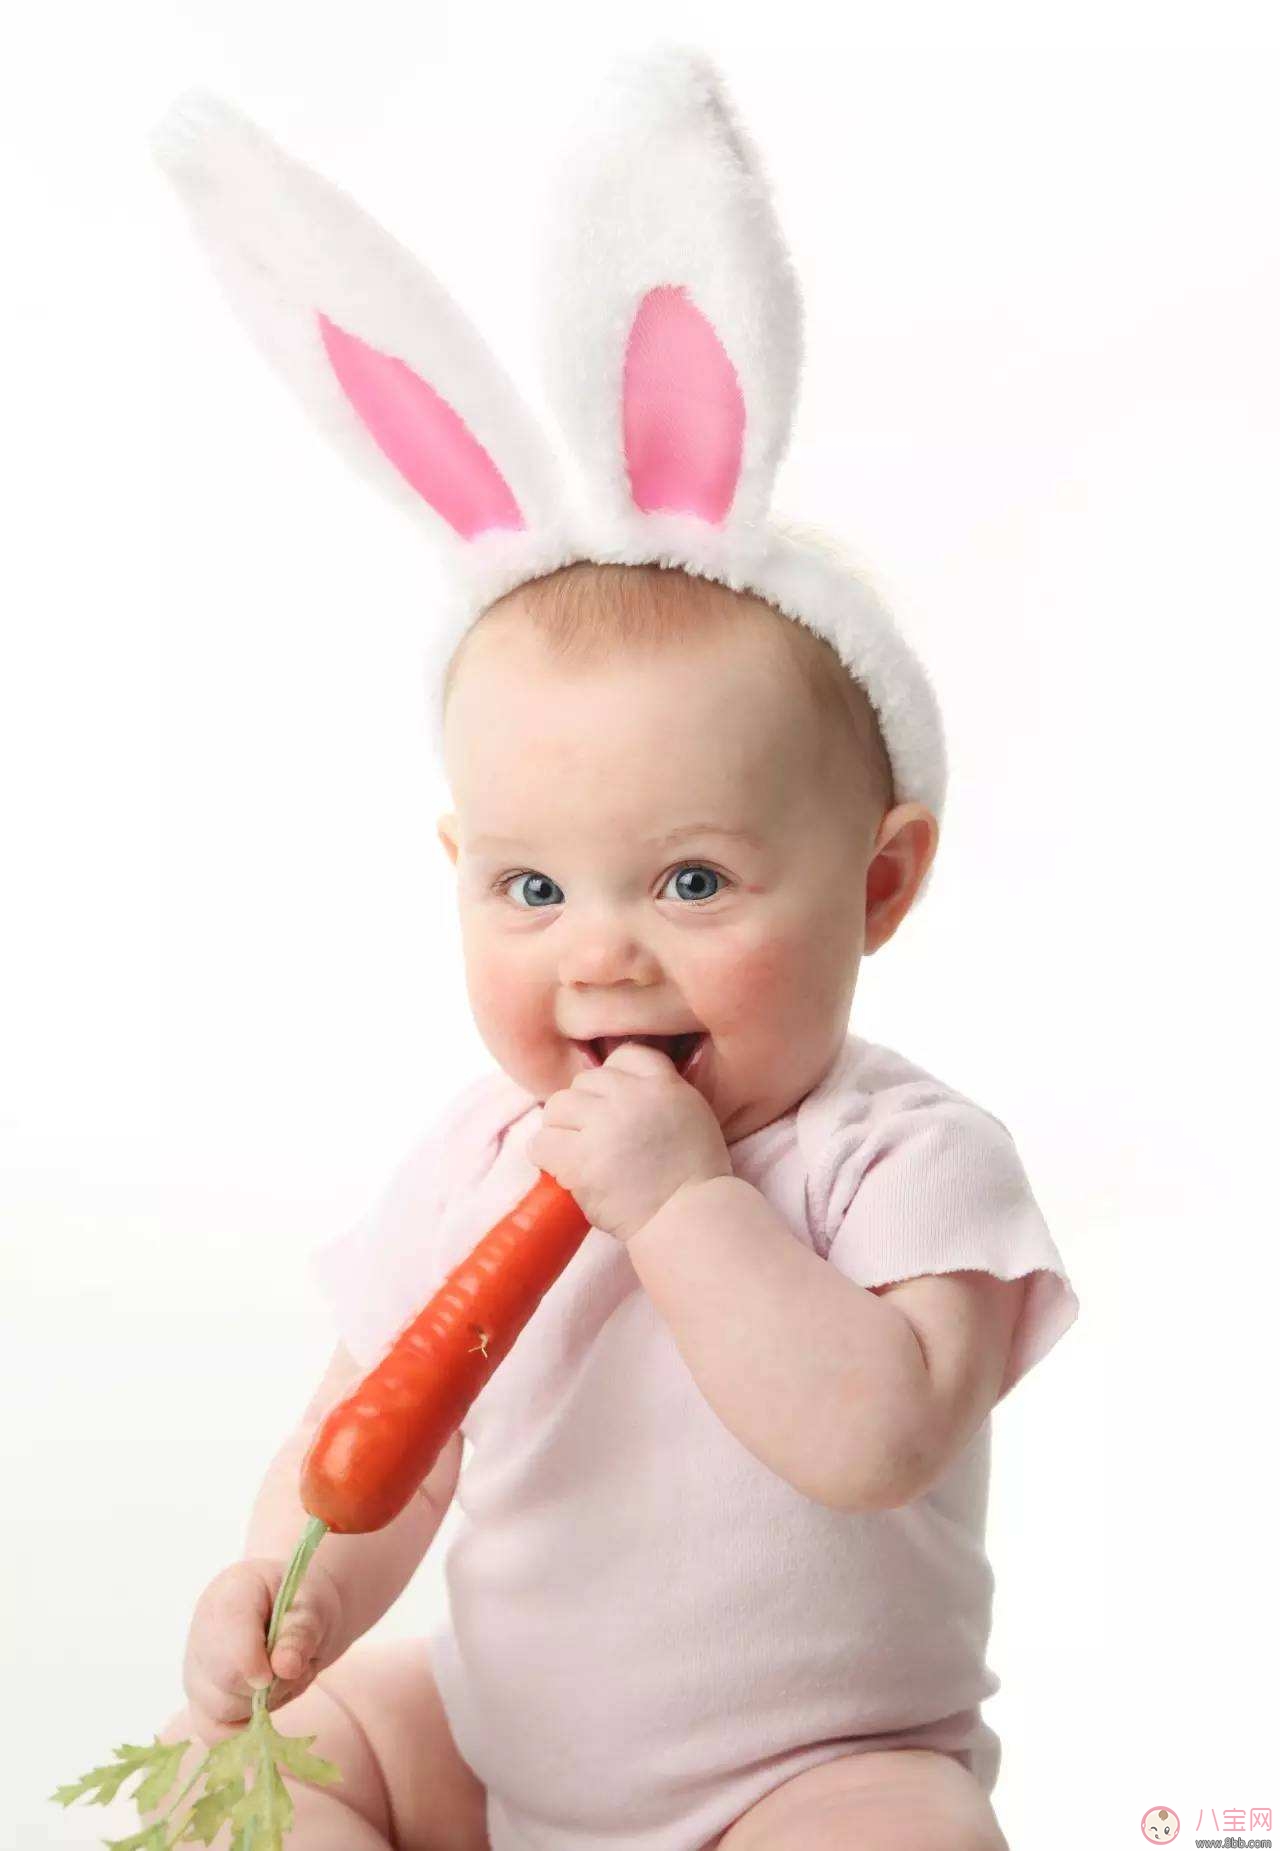 多大的宝宝可以吃鸡蛋了 什么食物应该避免给宝宝吃